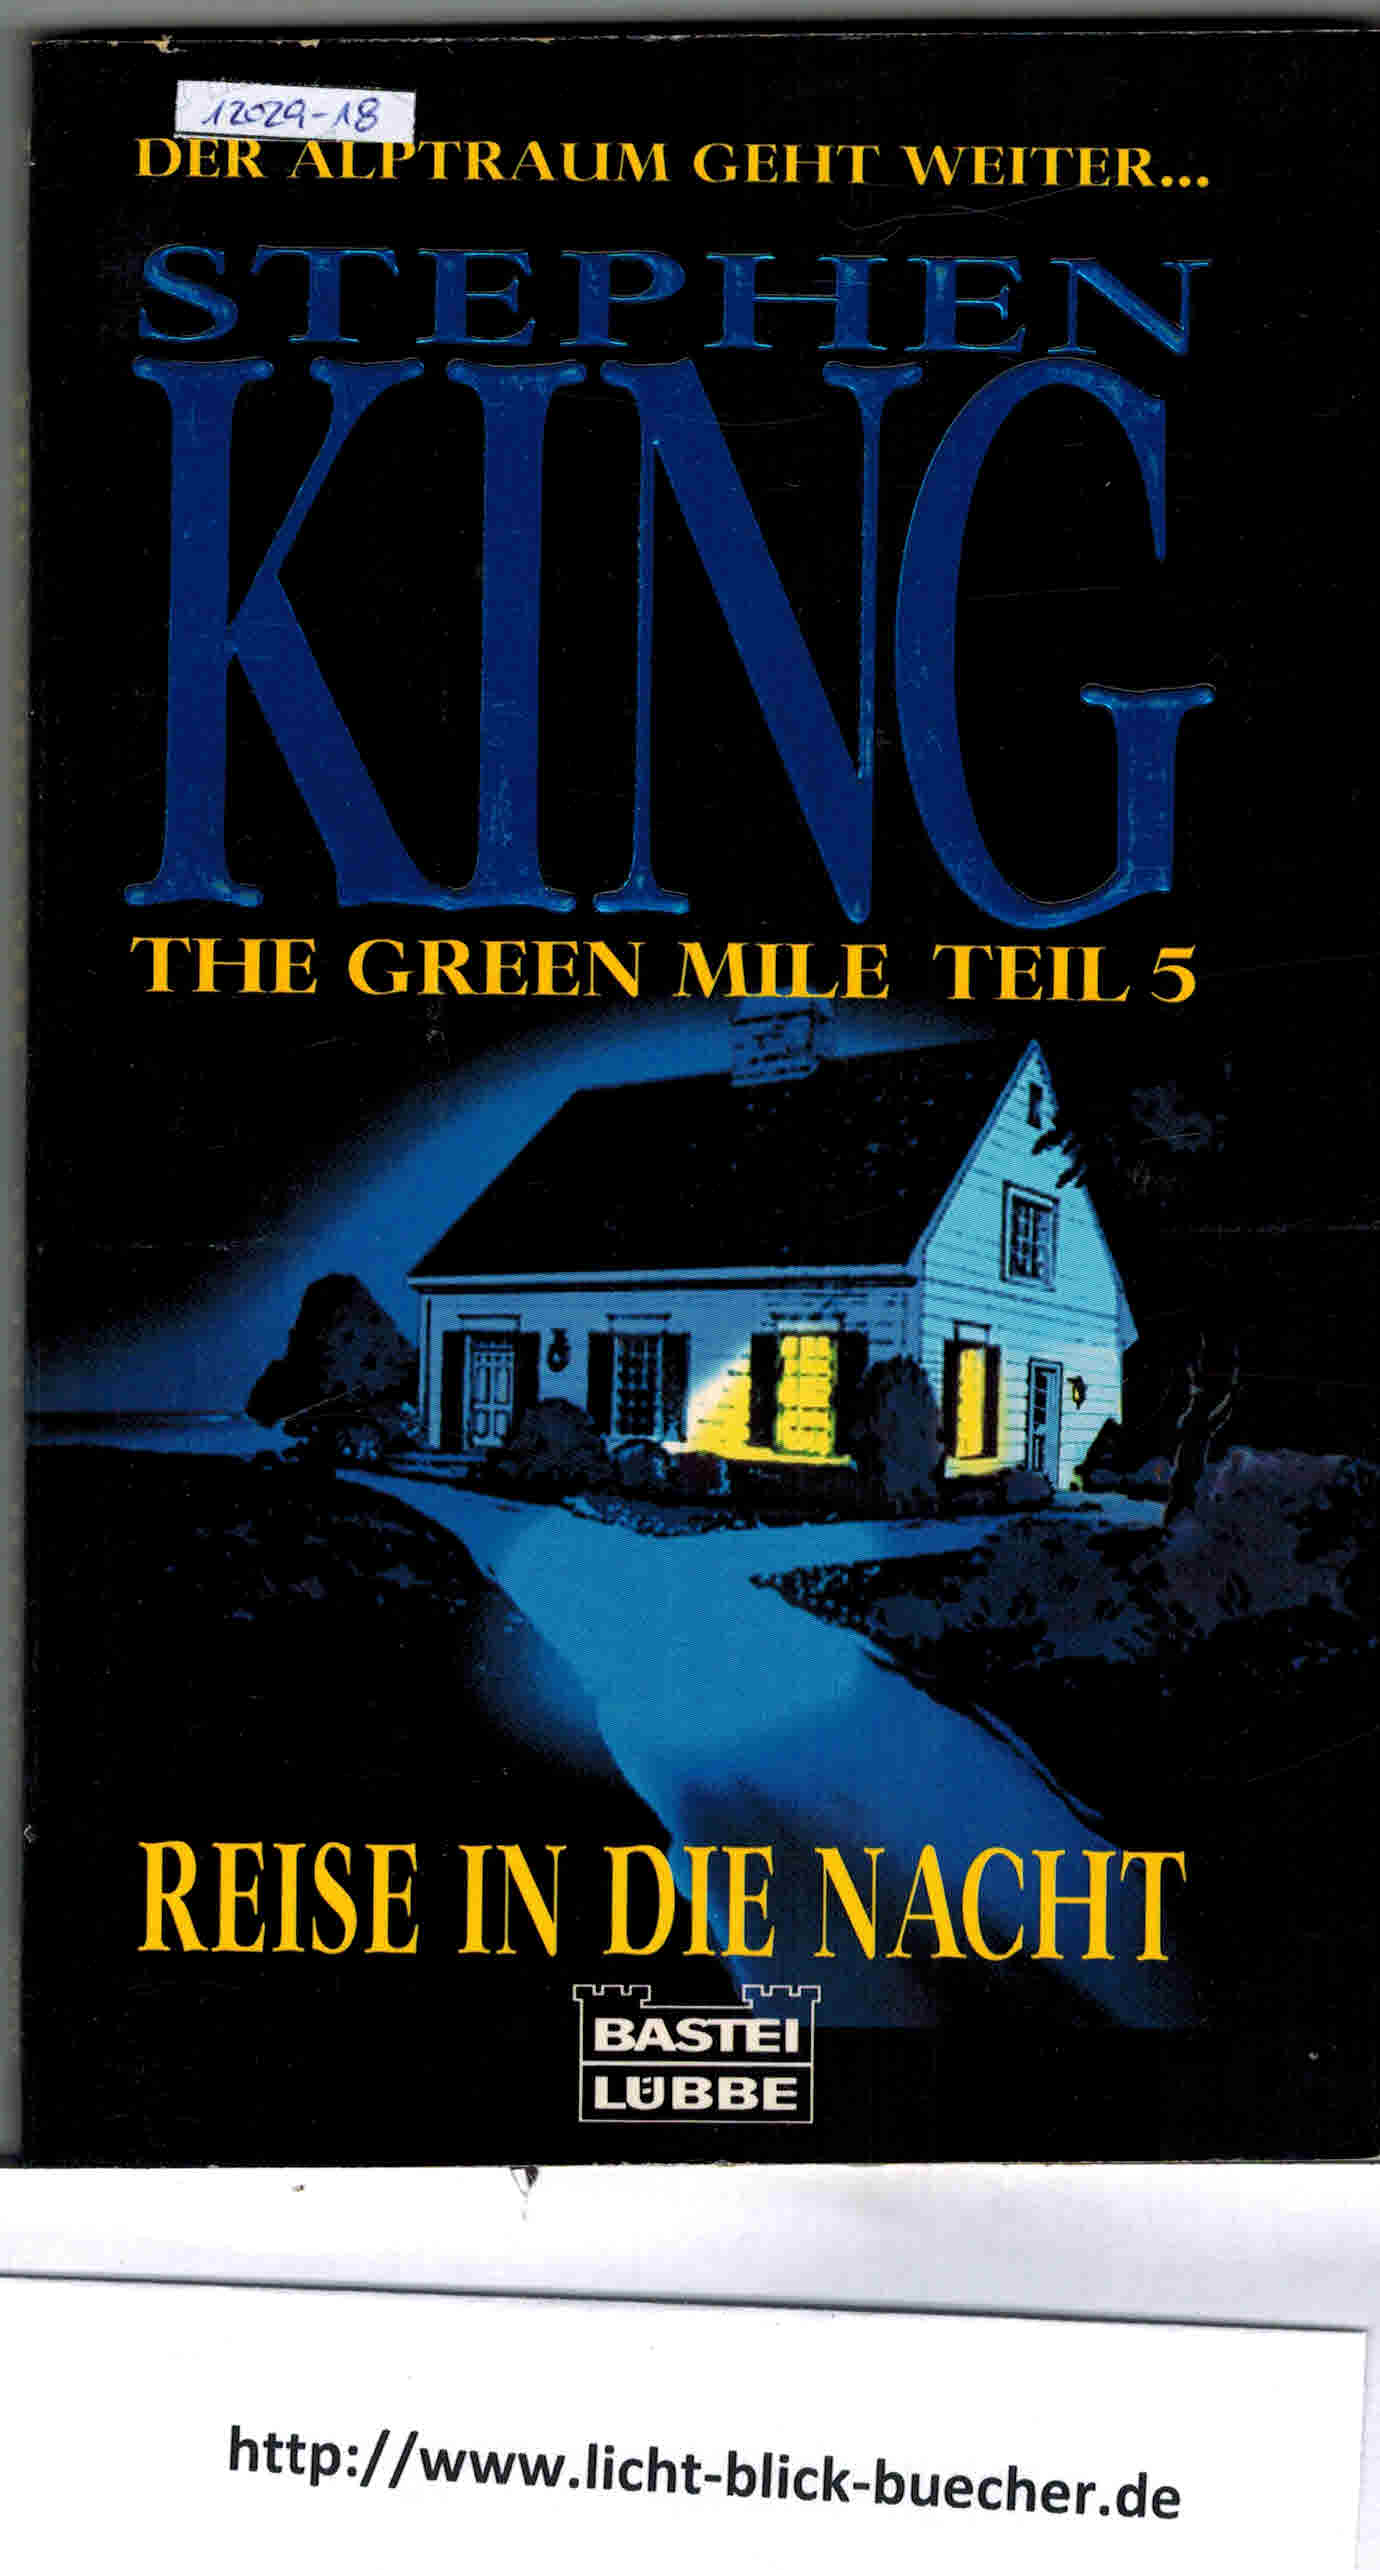 THE GREEN MILETeil 5 Reise in die NachtStephen King